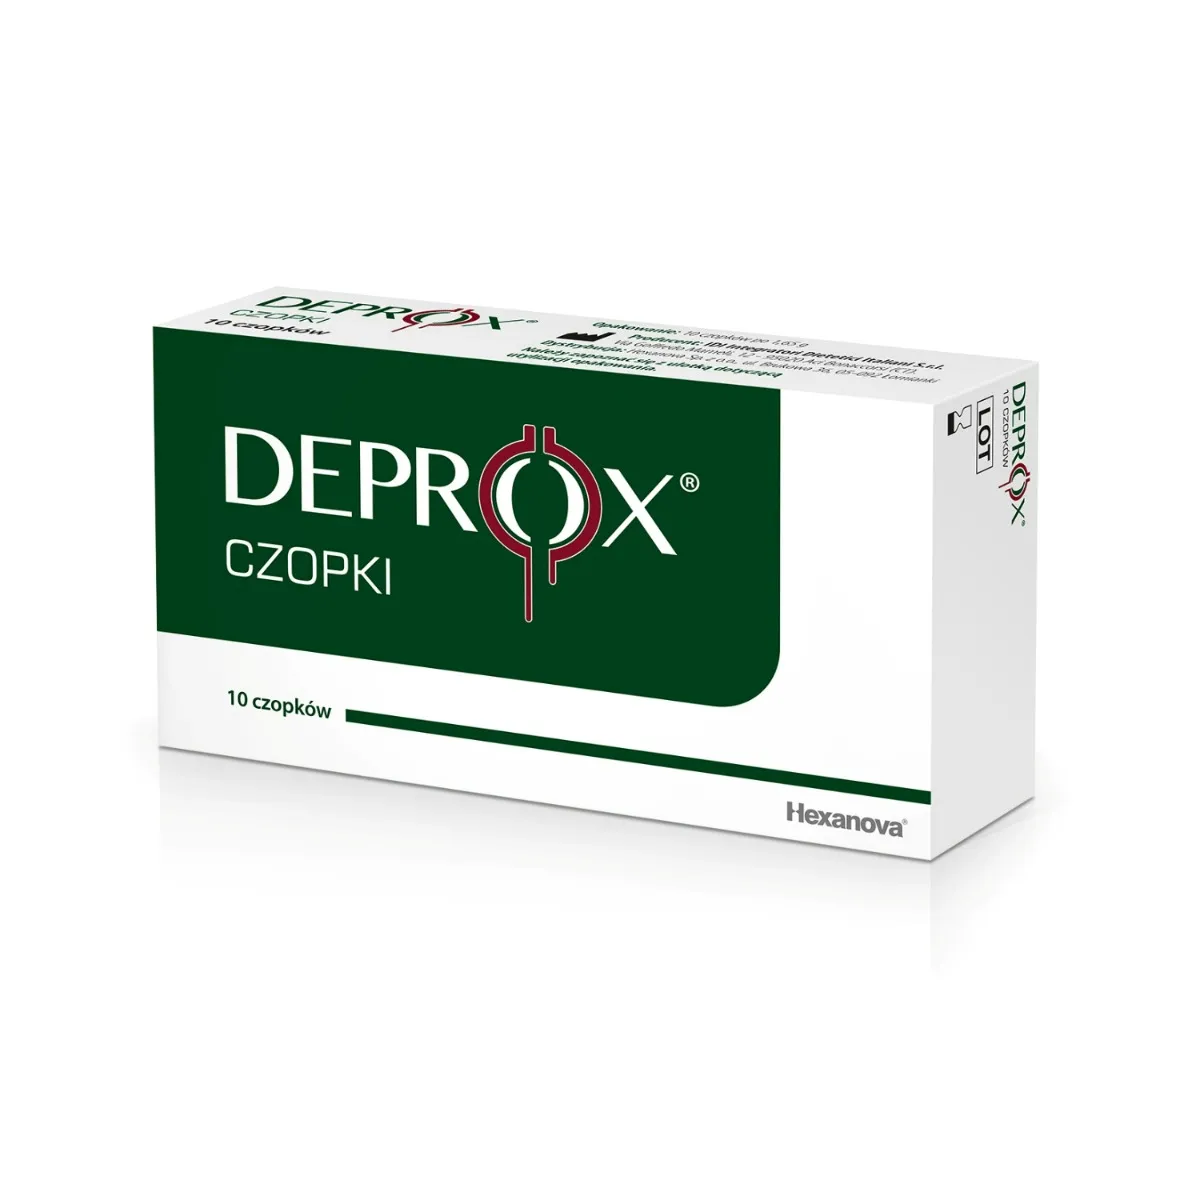 Deprox® czopki, 10 sztuk